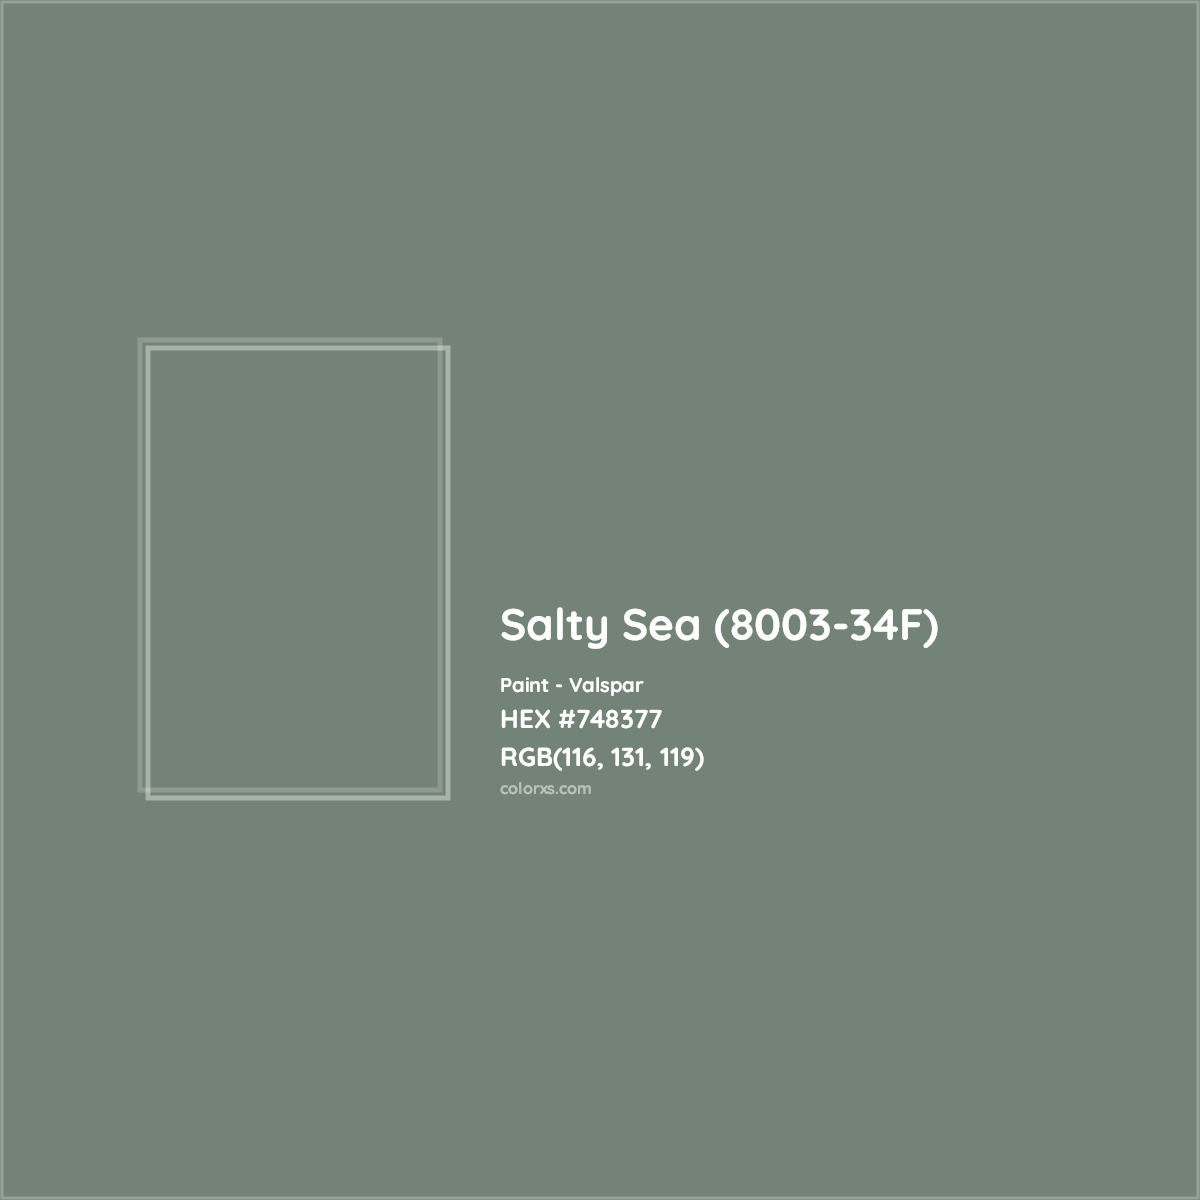 HEX #748377 Salty Sea (8003-34F) Paint Valspar - Color Code